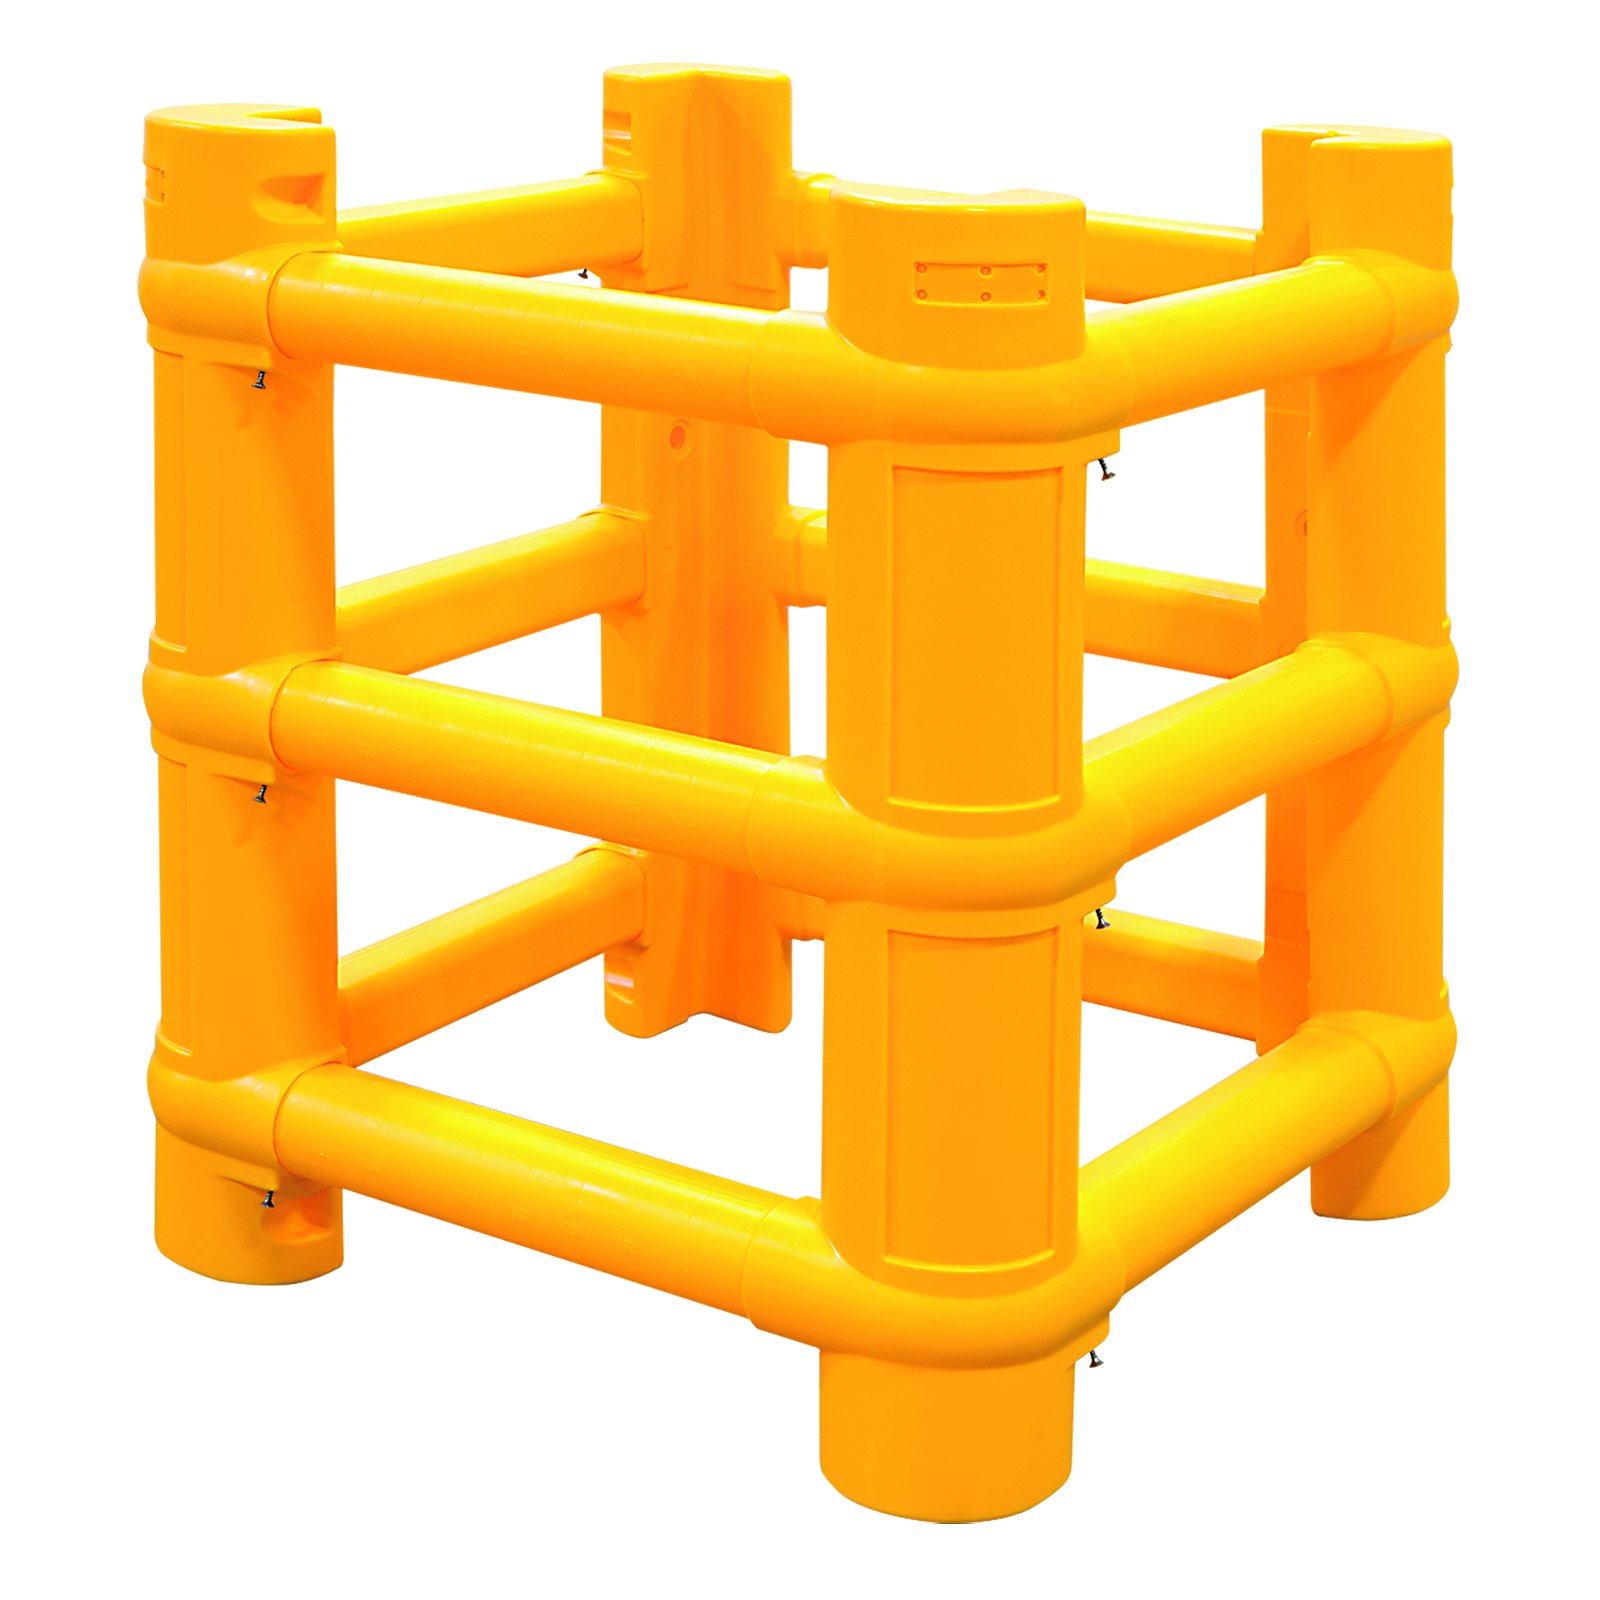 Modellbeispiel: Säulenschutz -ECO-, aus Kunststoff, für Säulenmaß 200-700 mm (Art. 41535.0001)